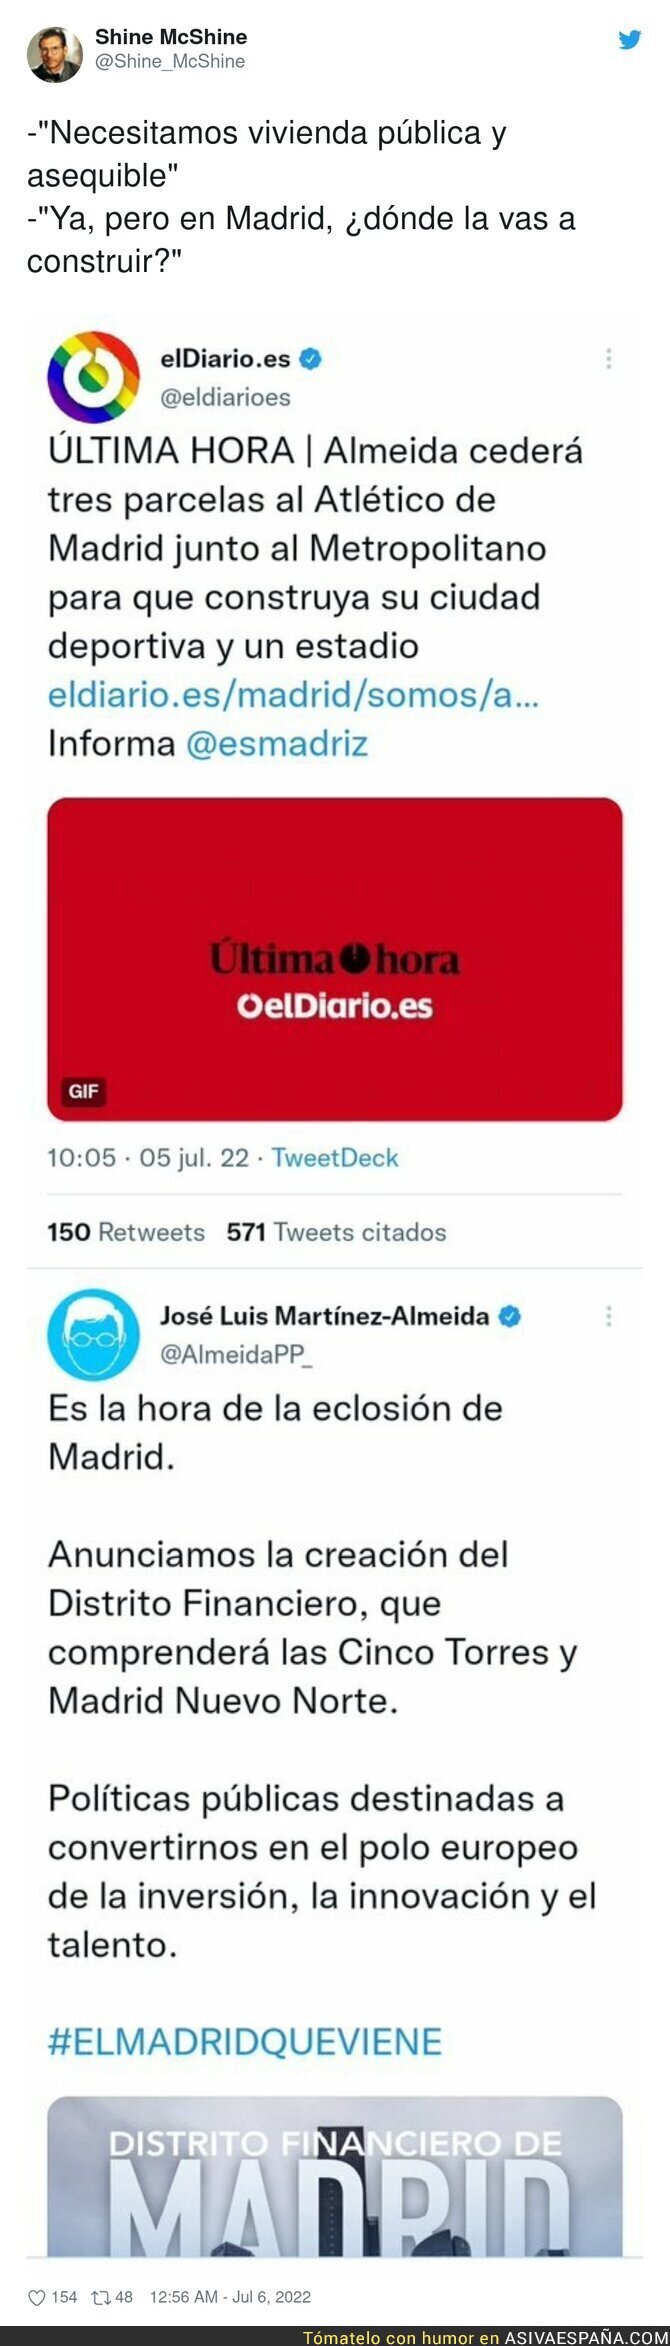 José Luis Martínez Almeida le da el favor de su vida al Atlético de Madrid